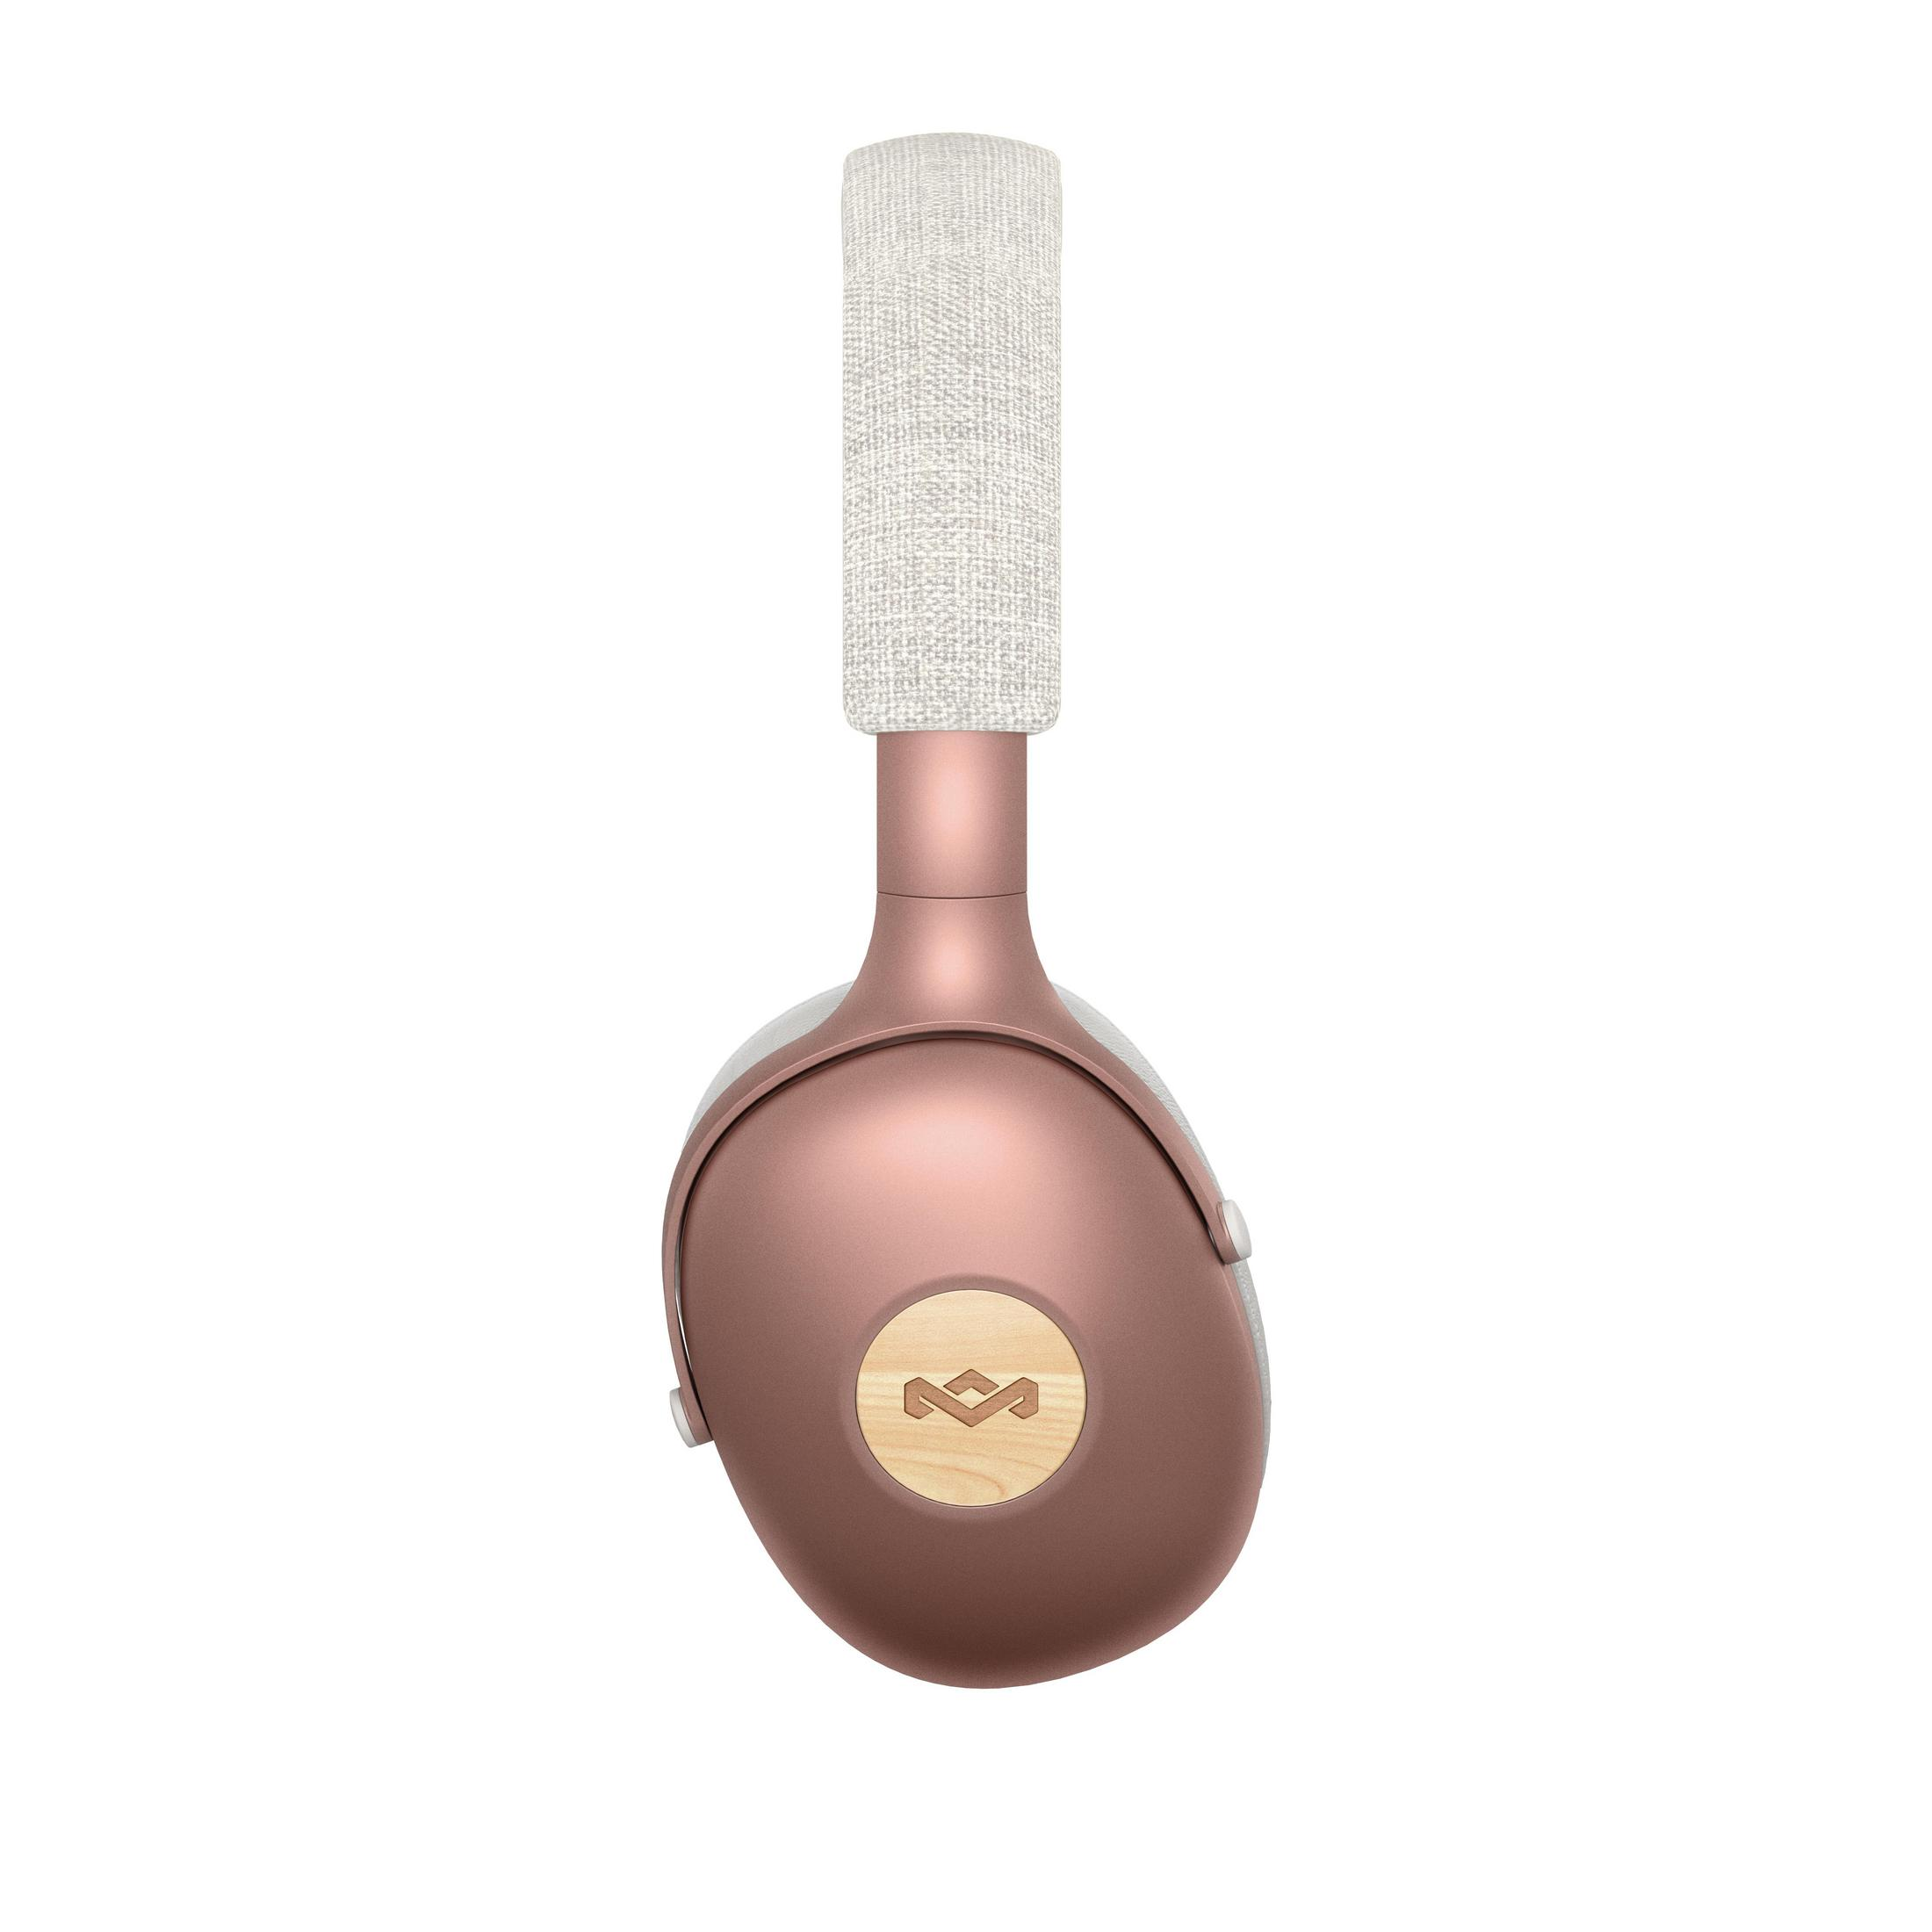 HOUSE POSITIVE Bluetooth OF EM-JH141-CP Kupfer XL KUPFER, VIBRATION MARLEY Over-ear Kopfhörer